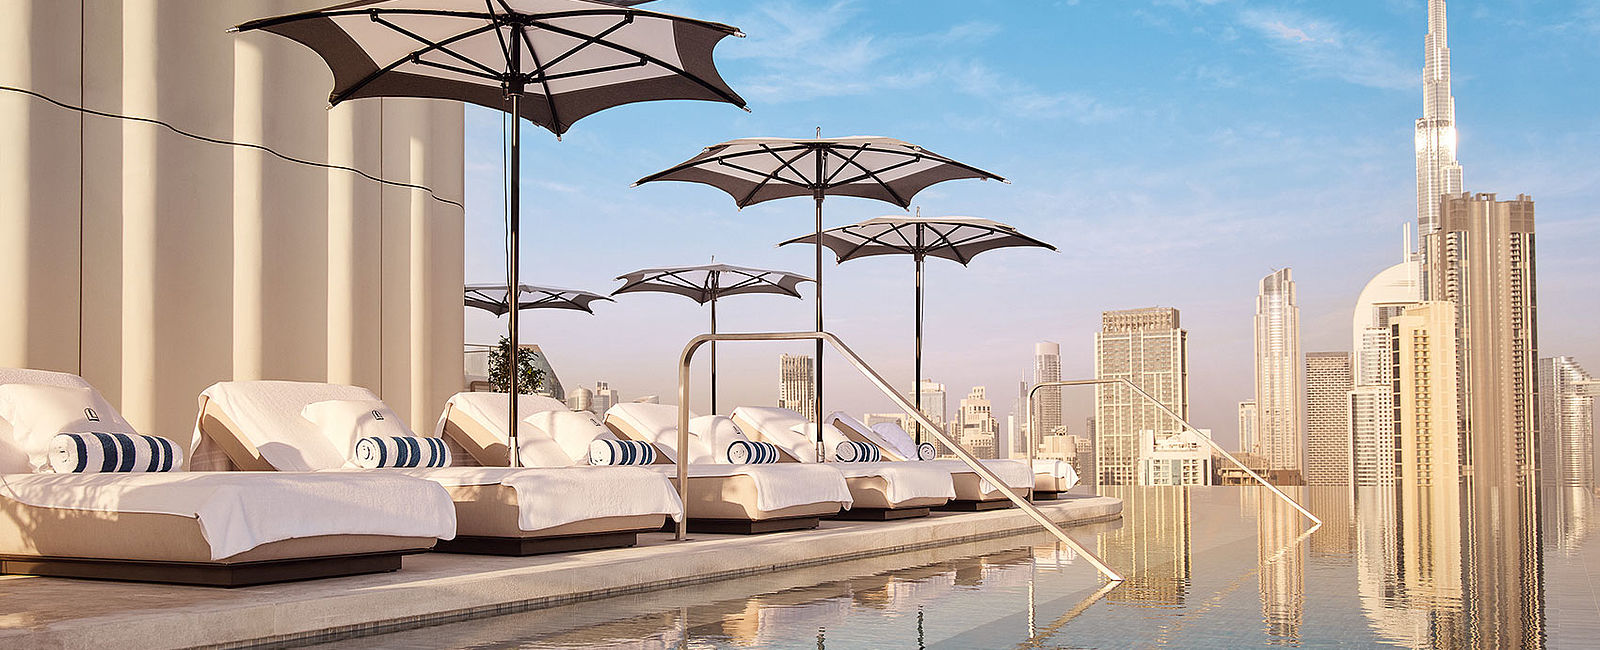 HOTEL NEWS
 Dorchester goes Dubai 
